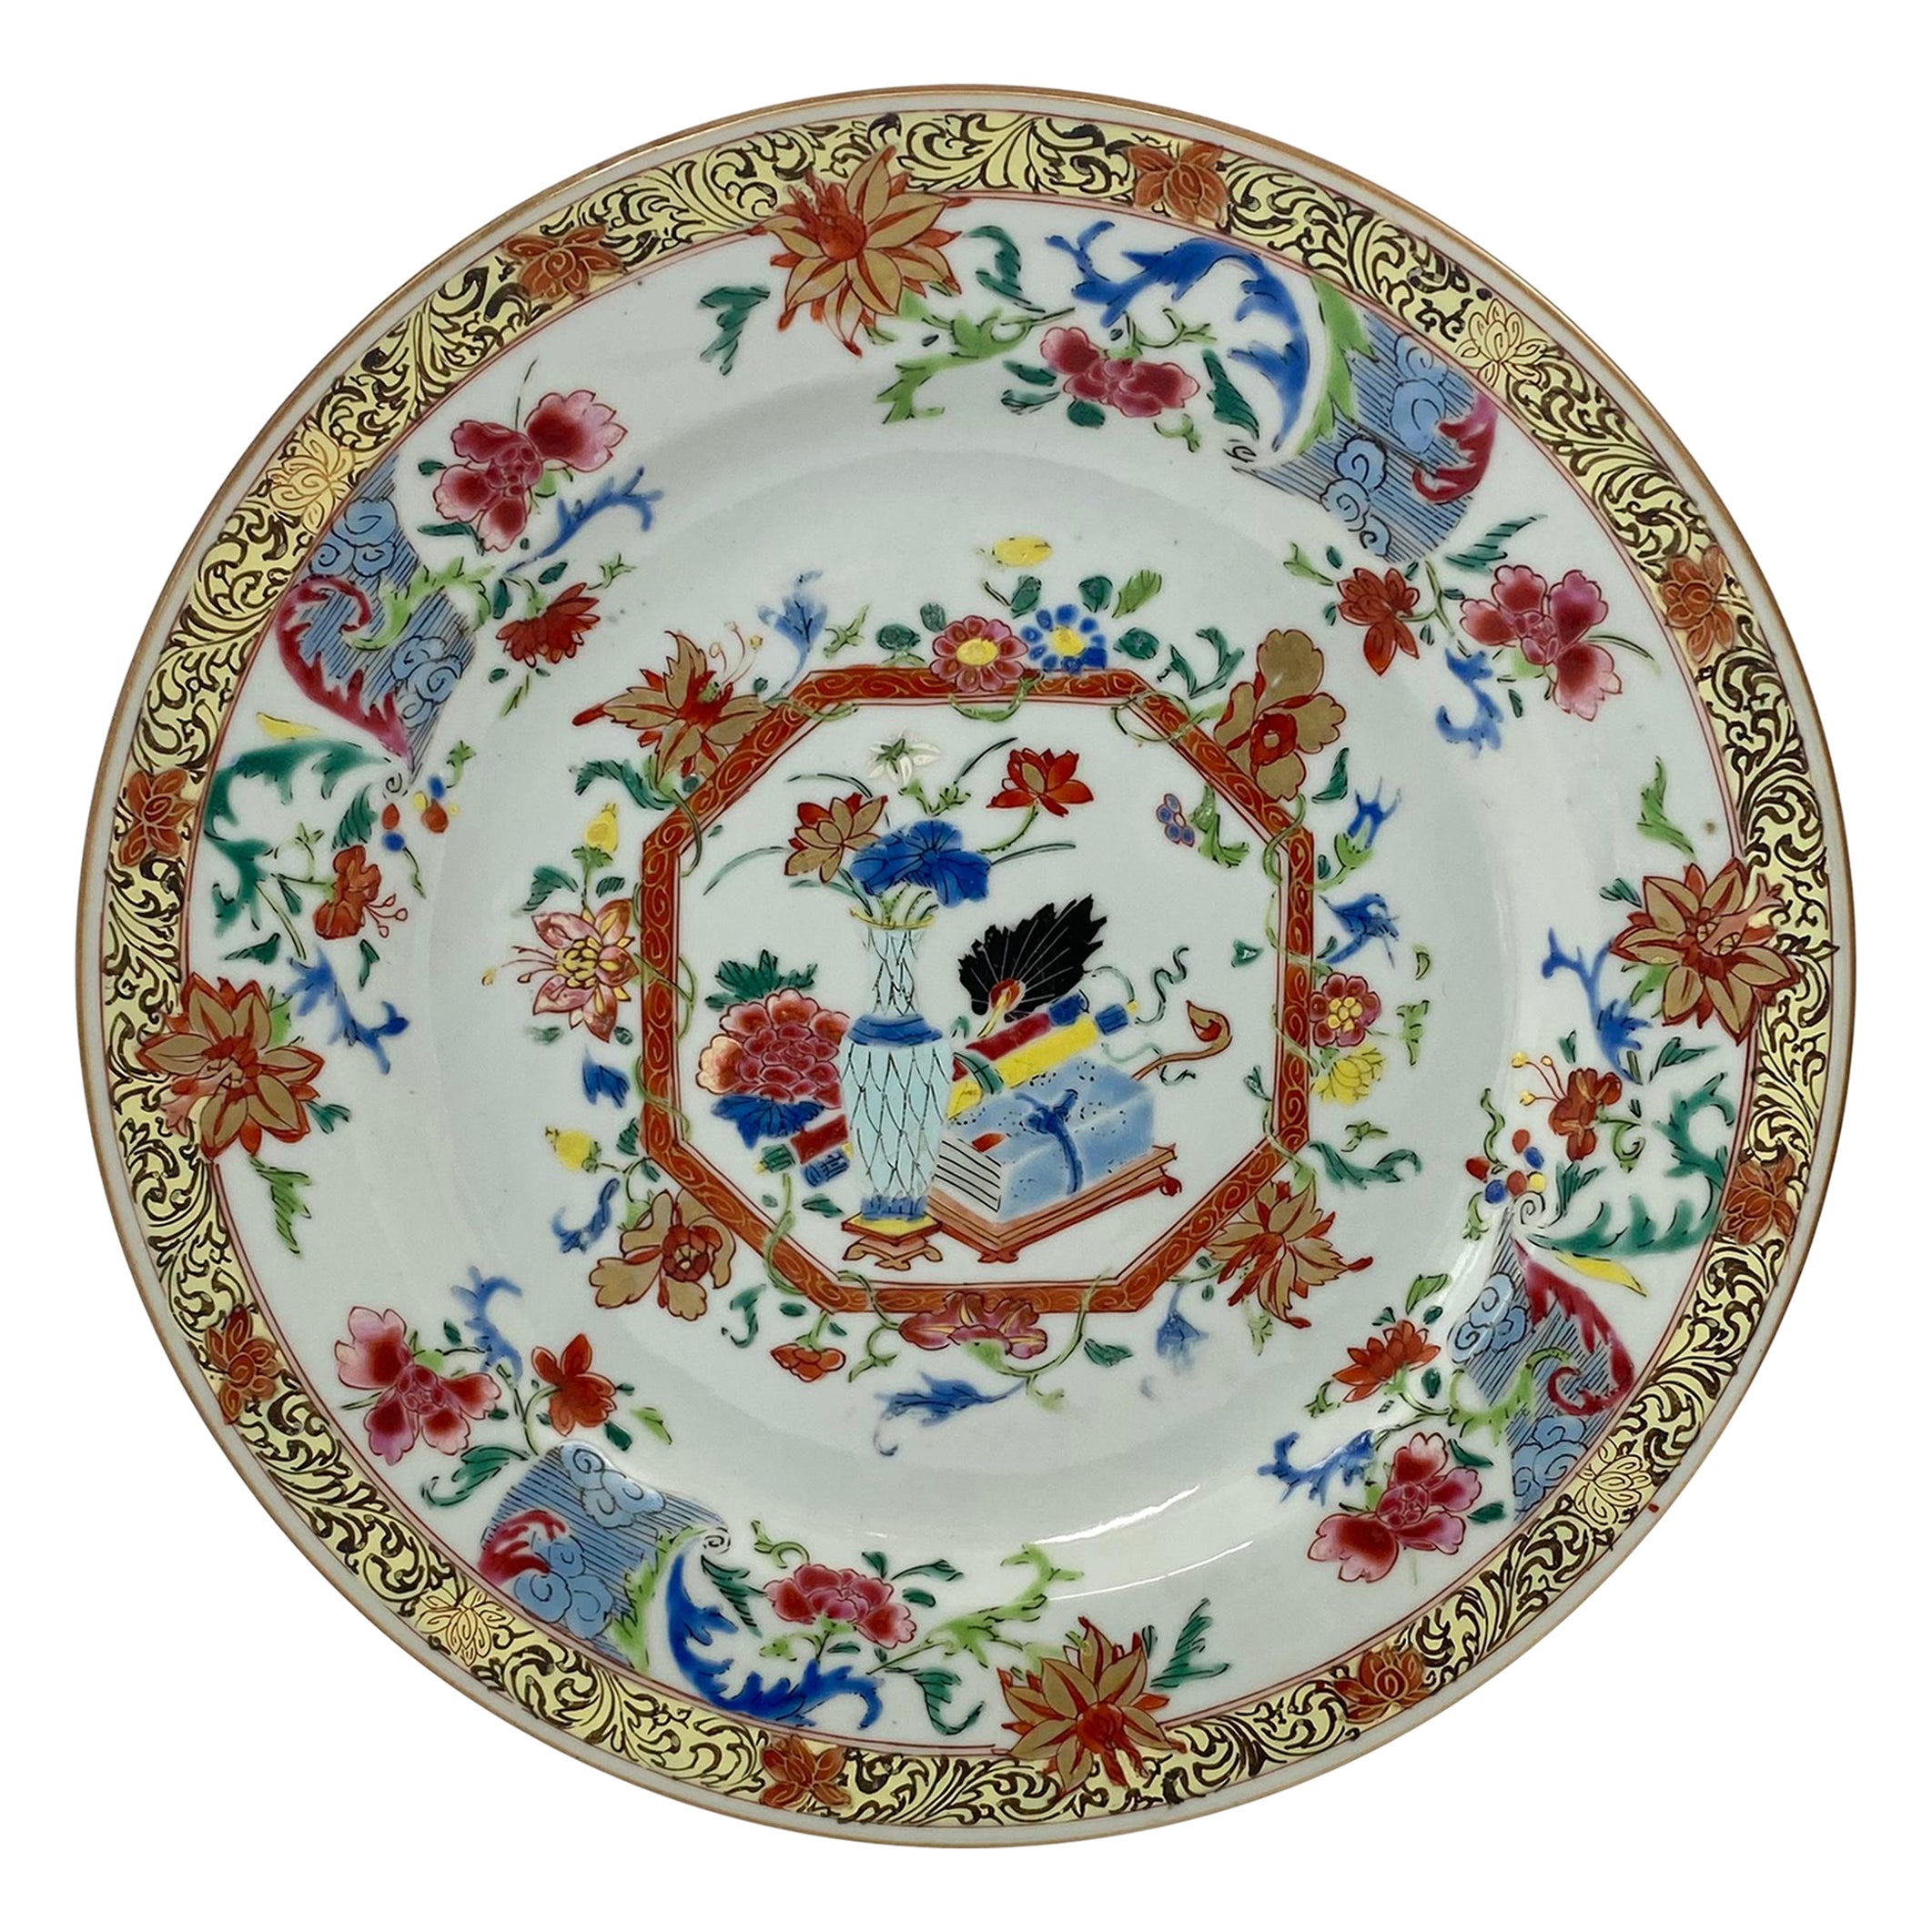 Chinesisches Porzellangeschirr, Famille Rose, um 1740, Qianlong-Periode